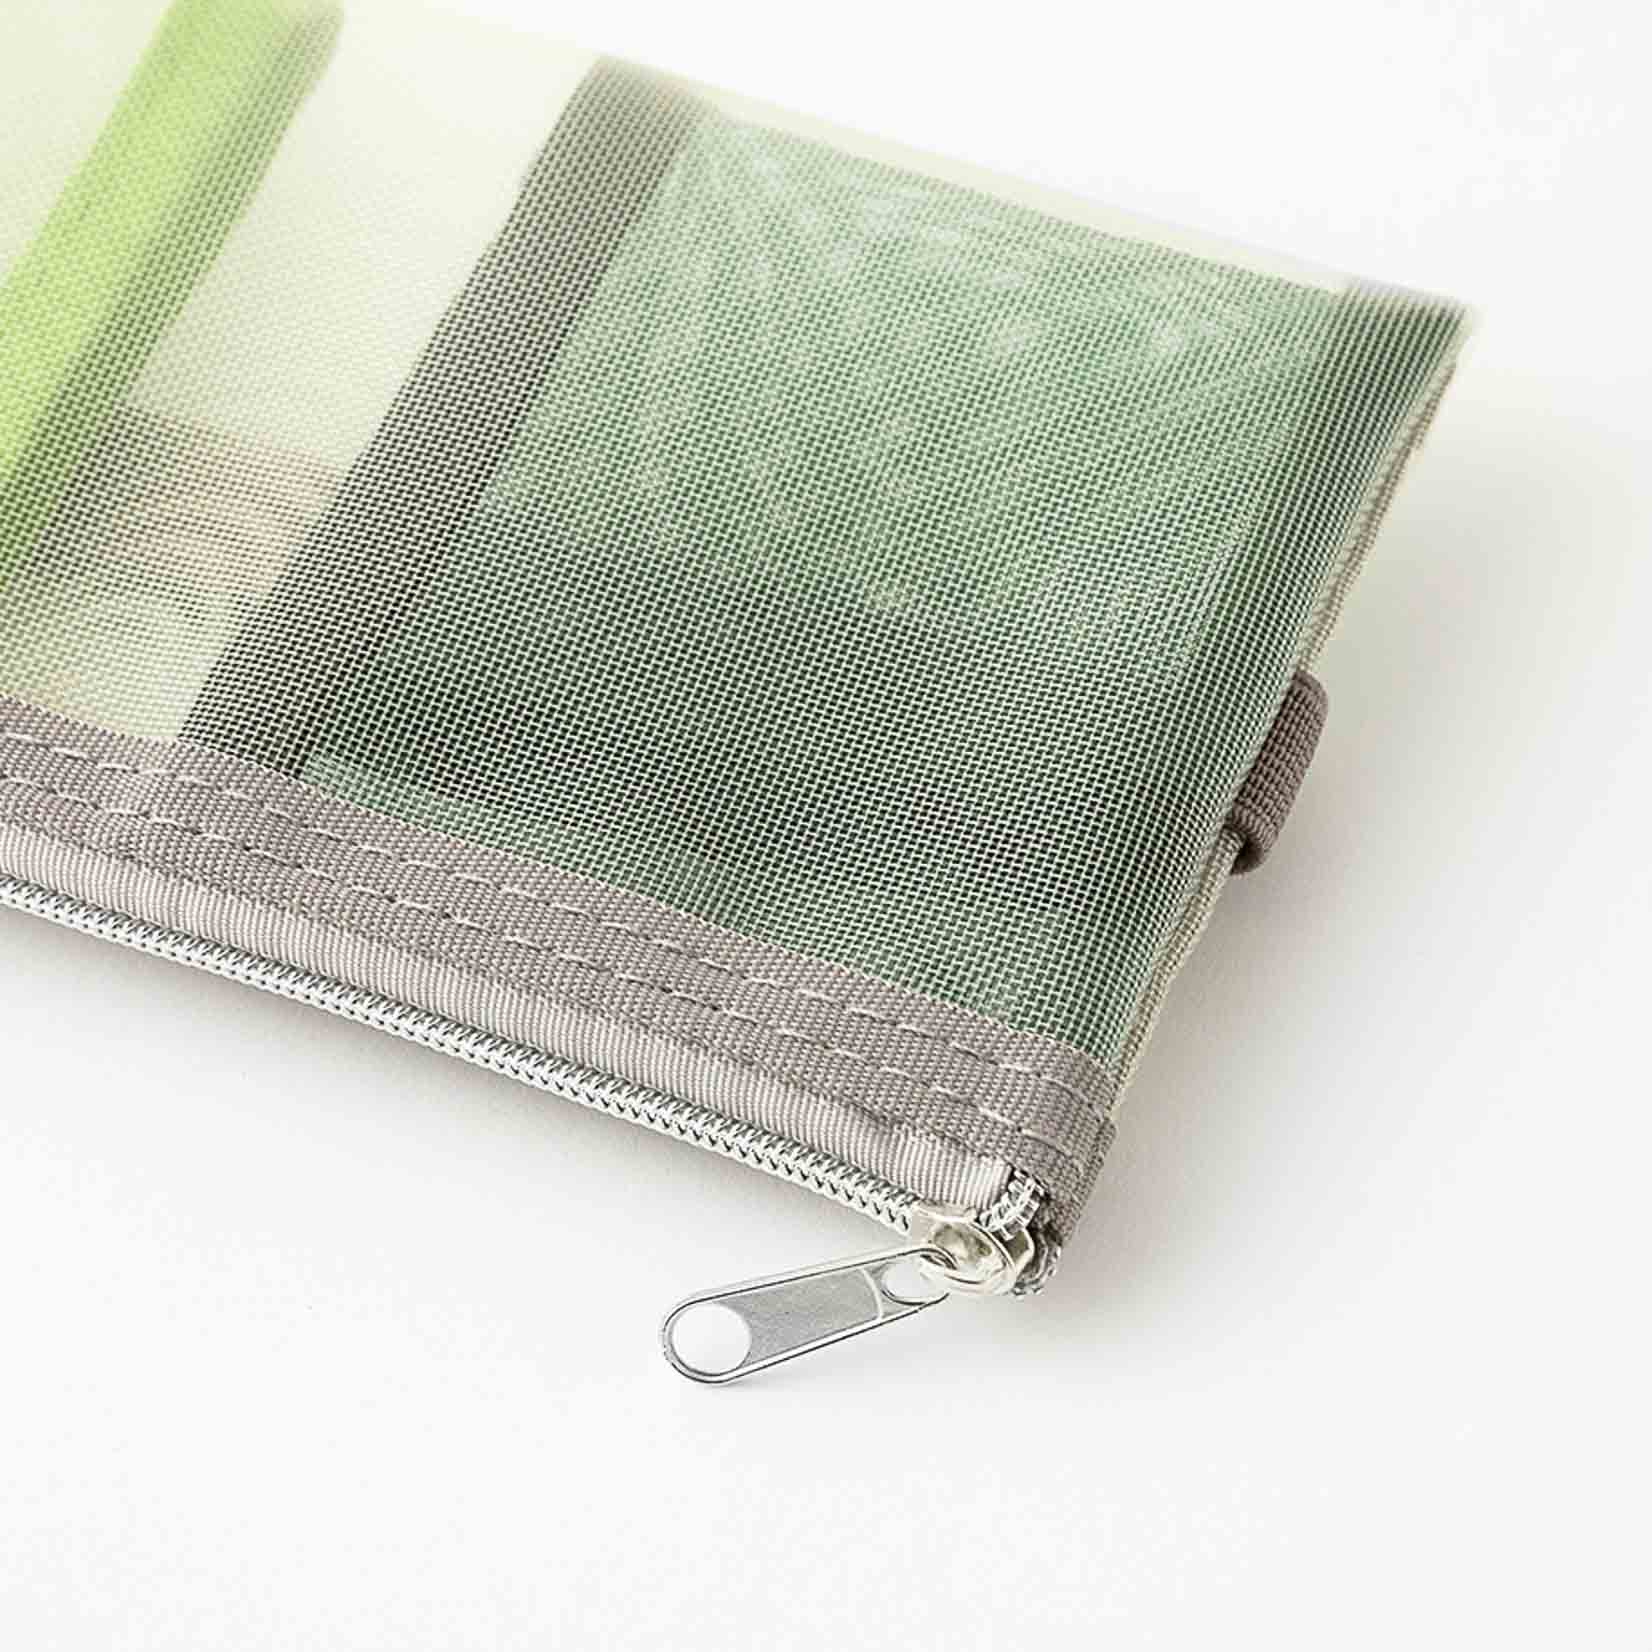 Kleine Tasche aus durchsichtigem Netzgewebe für Stifte und Kleinteile mit Gummiband zur Befestigung an einem Notizbuch oder Kalender, Detailansicht mit Reißverschluss